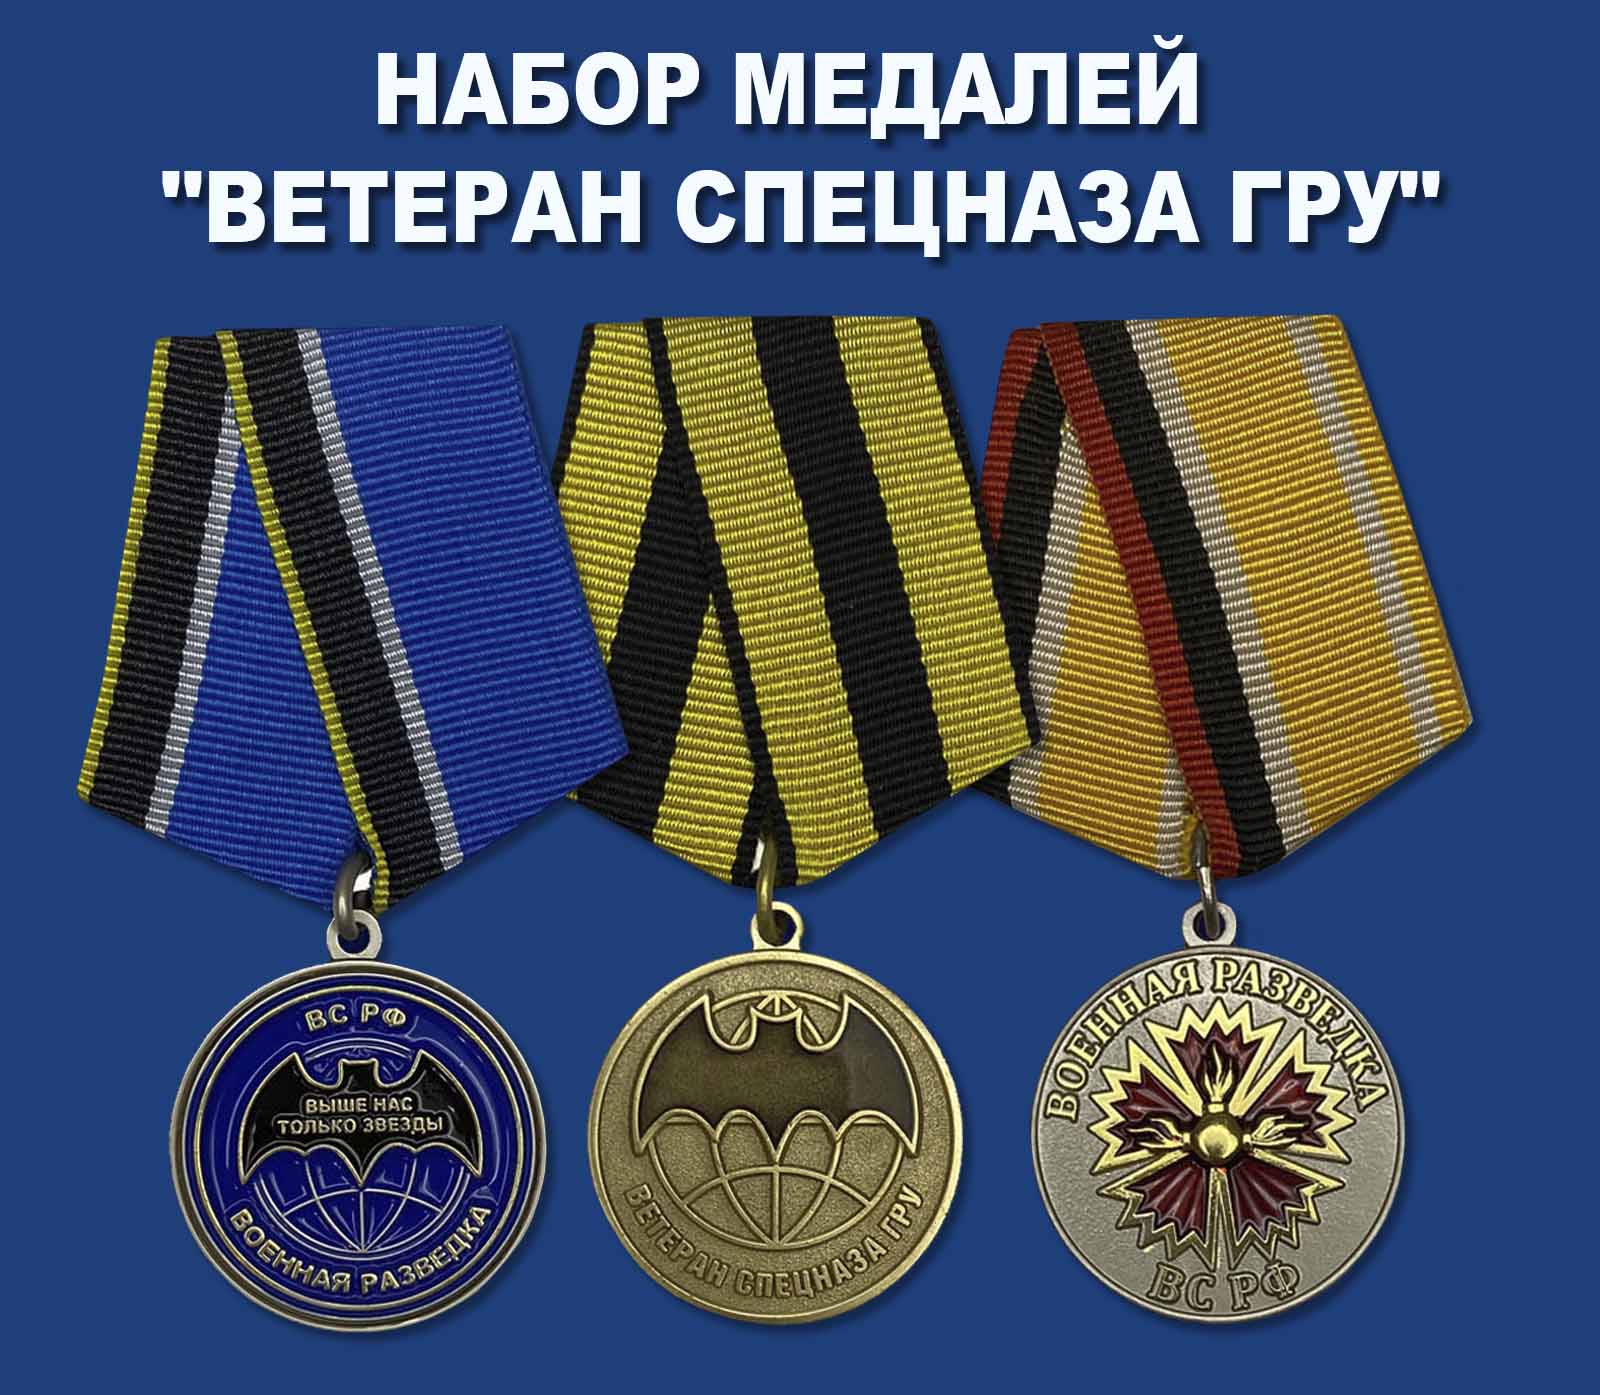 Купить набор медалей "Ветеран Спецназа ГРУ"